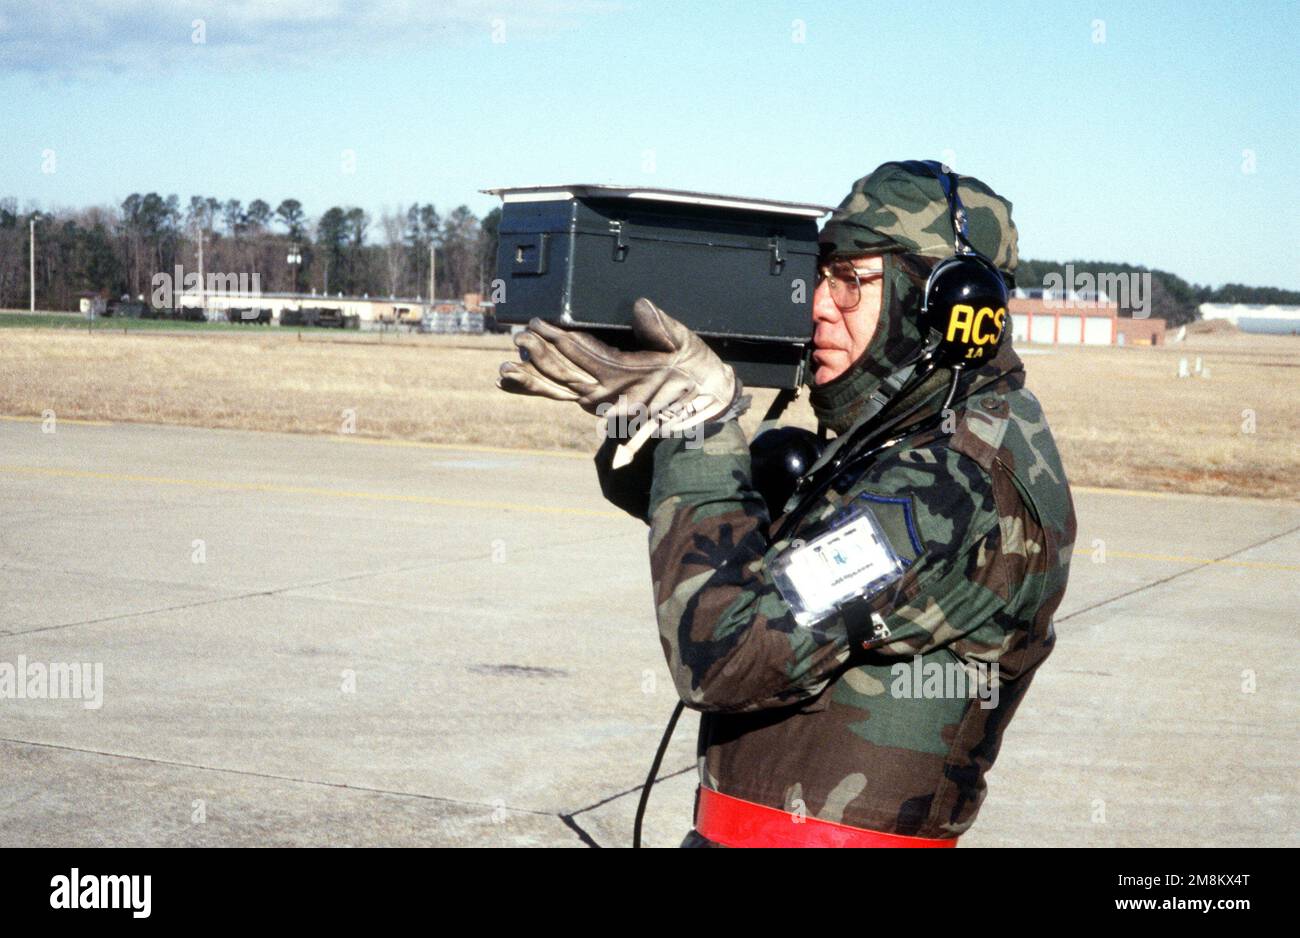 MASTER SGT. Hawkins steht auf der Landebahn und verwendet während der 169. Fighter Wing Operational Readiness Inspection einen tragbaren IFF-Sender/Empfänger (Identifikation, Freund oder Feind). Basis: McEntire Ang Station Bundesstaat: South Carolina (SC) Land: Vereinigte Staaten von Amerika (USA) Stockfoto